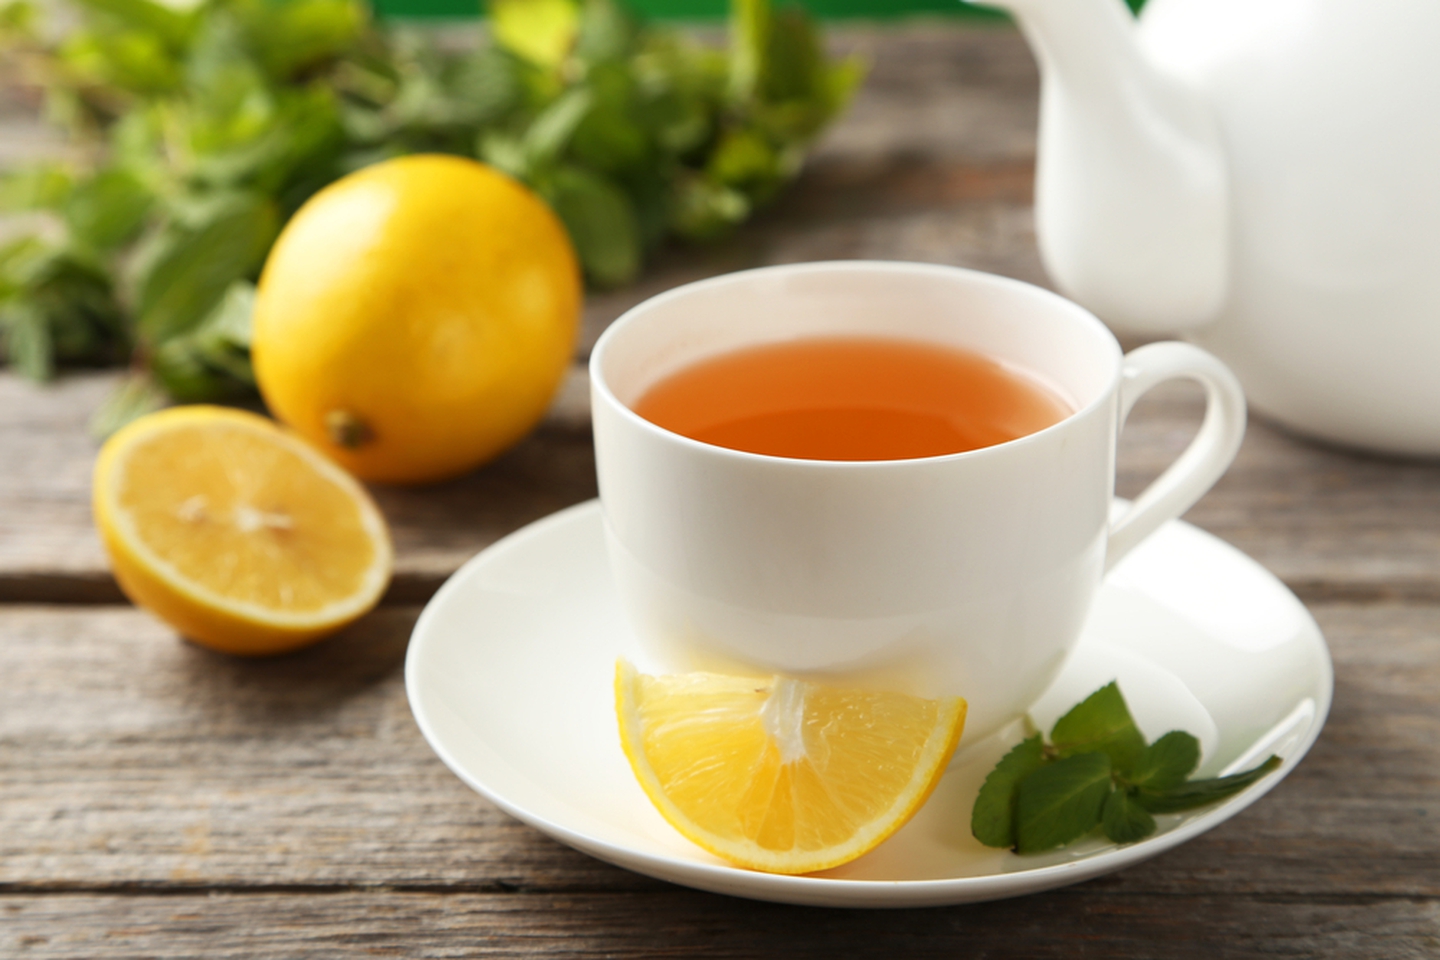 Bileceksin: Limonlu Çayın Sağlığa Yararı